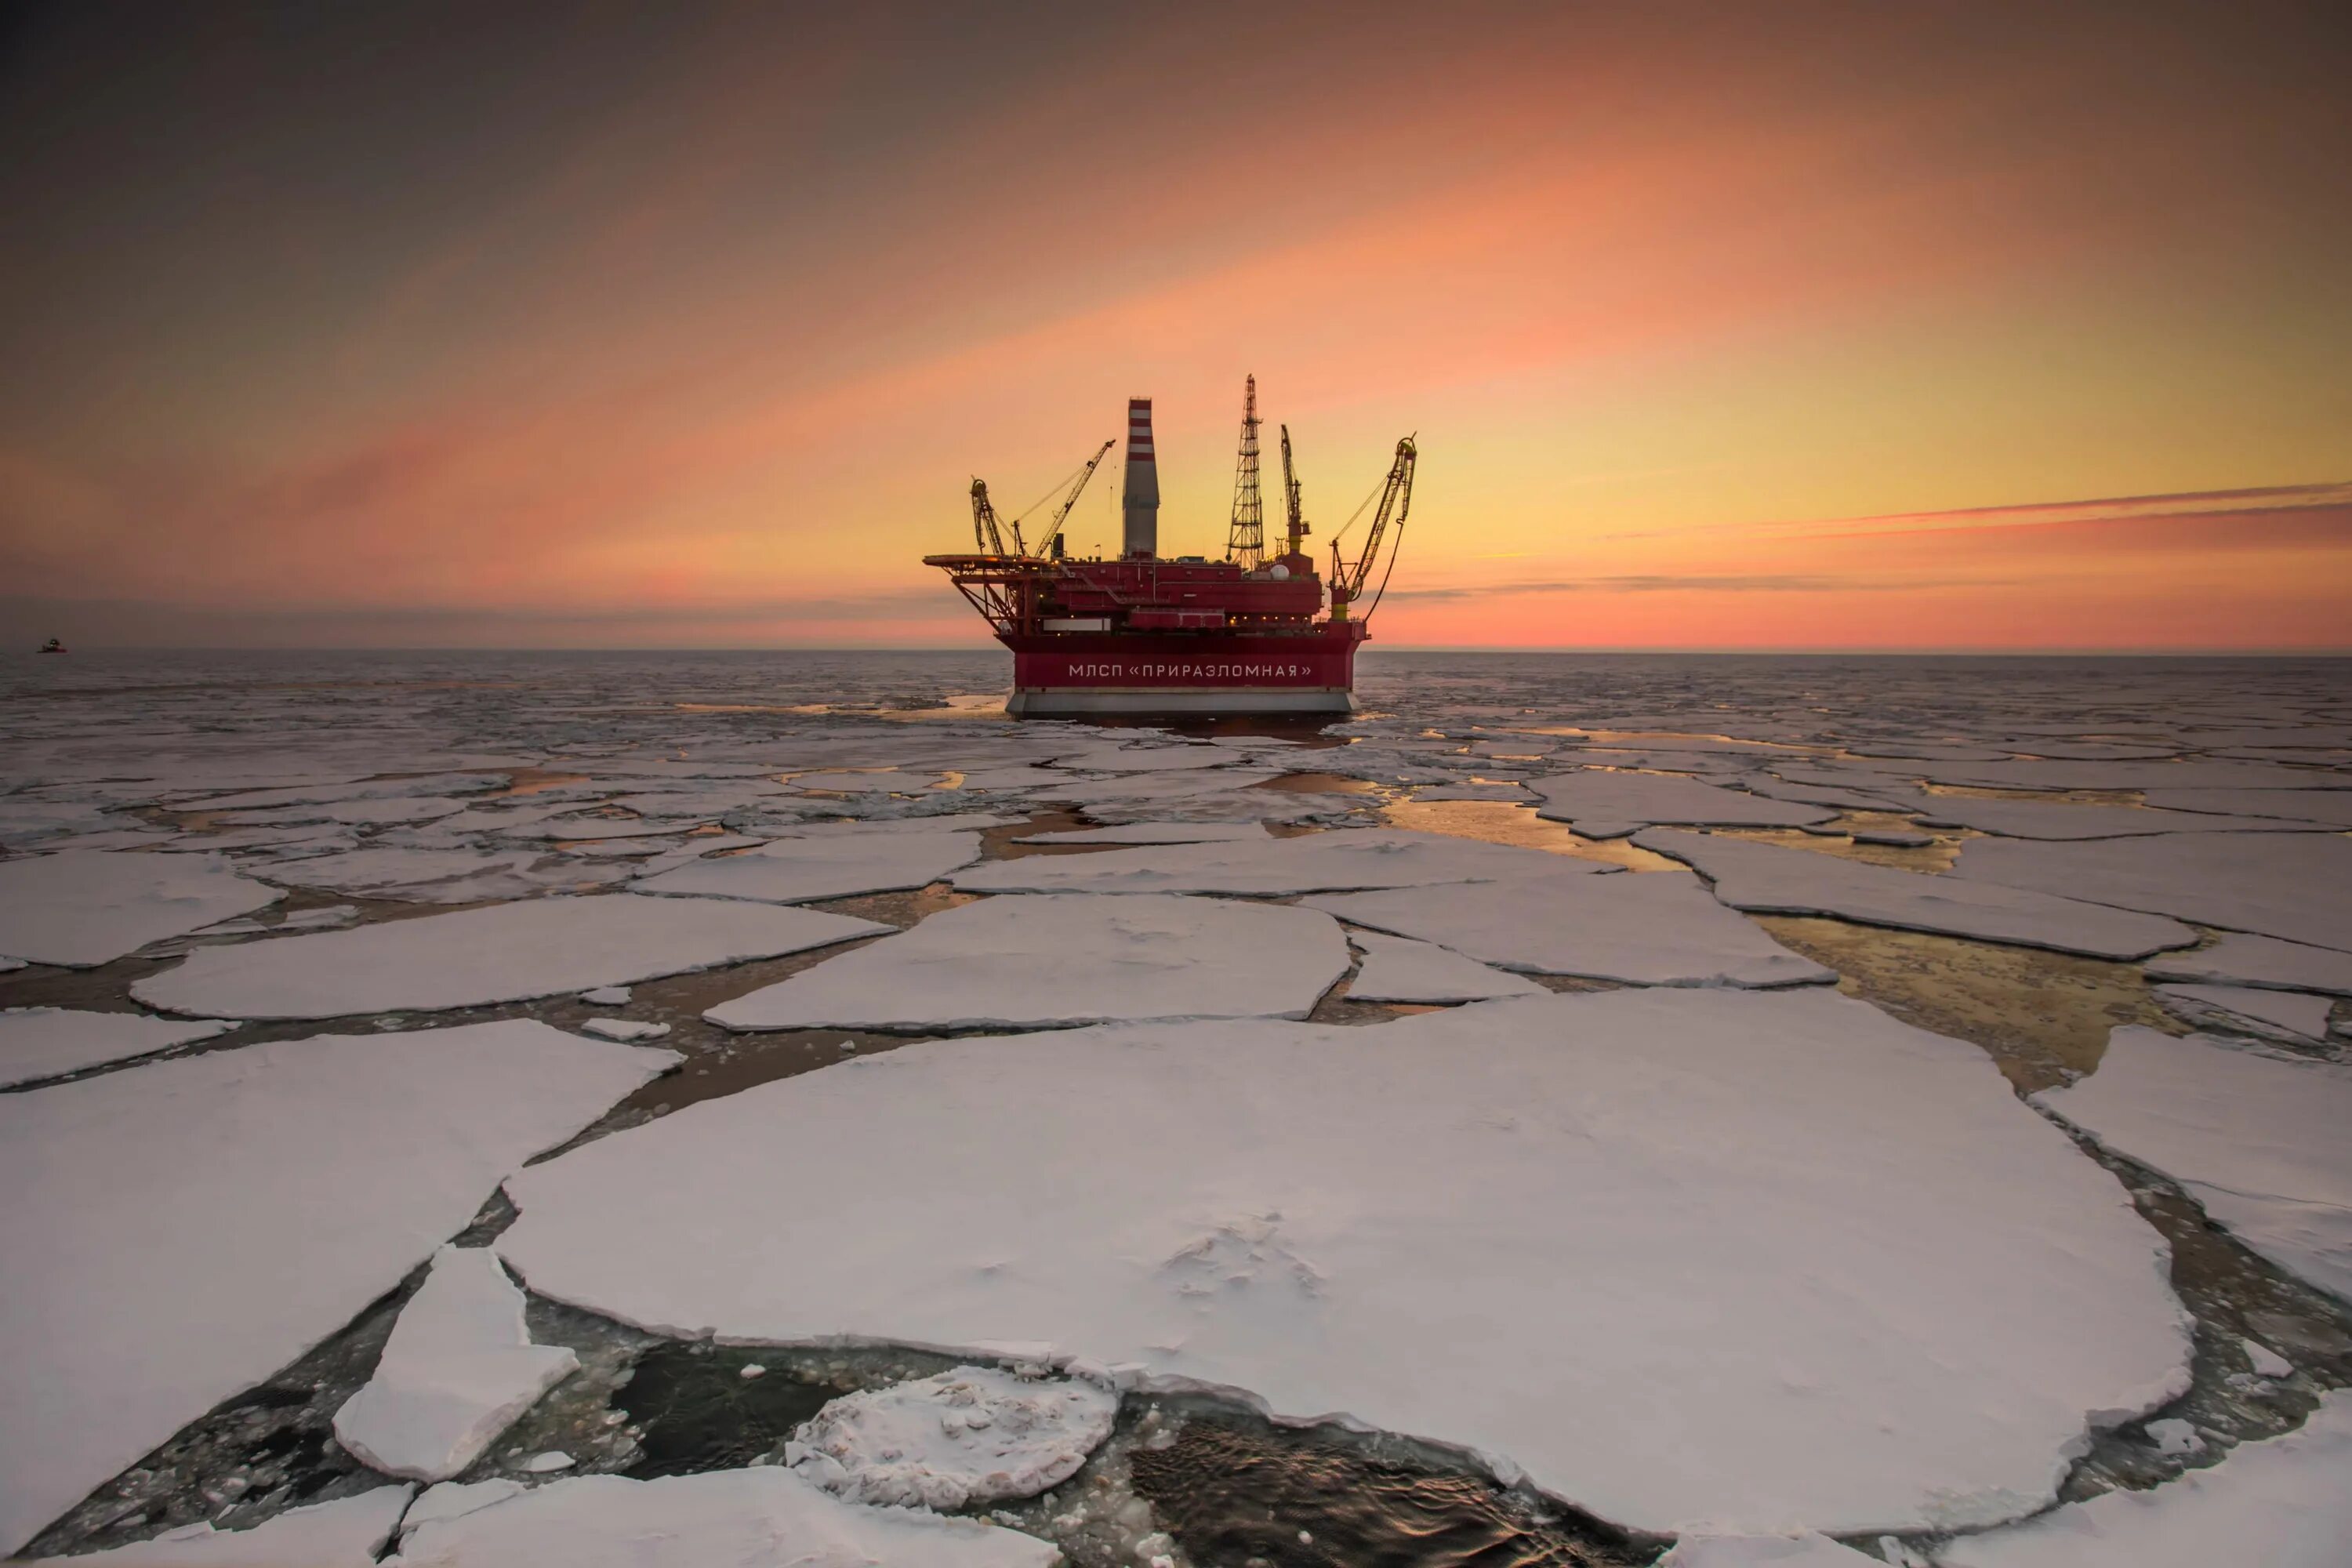 Изучение ледовой обстановки. Приразломная платформа в Арктике. Артика месторождения Приразломная. Ледостойкая платформа Приразломная. Арктический шельф Арктики.